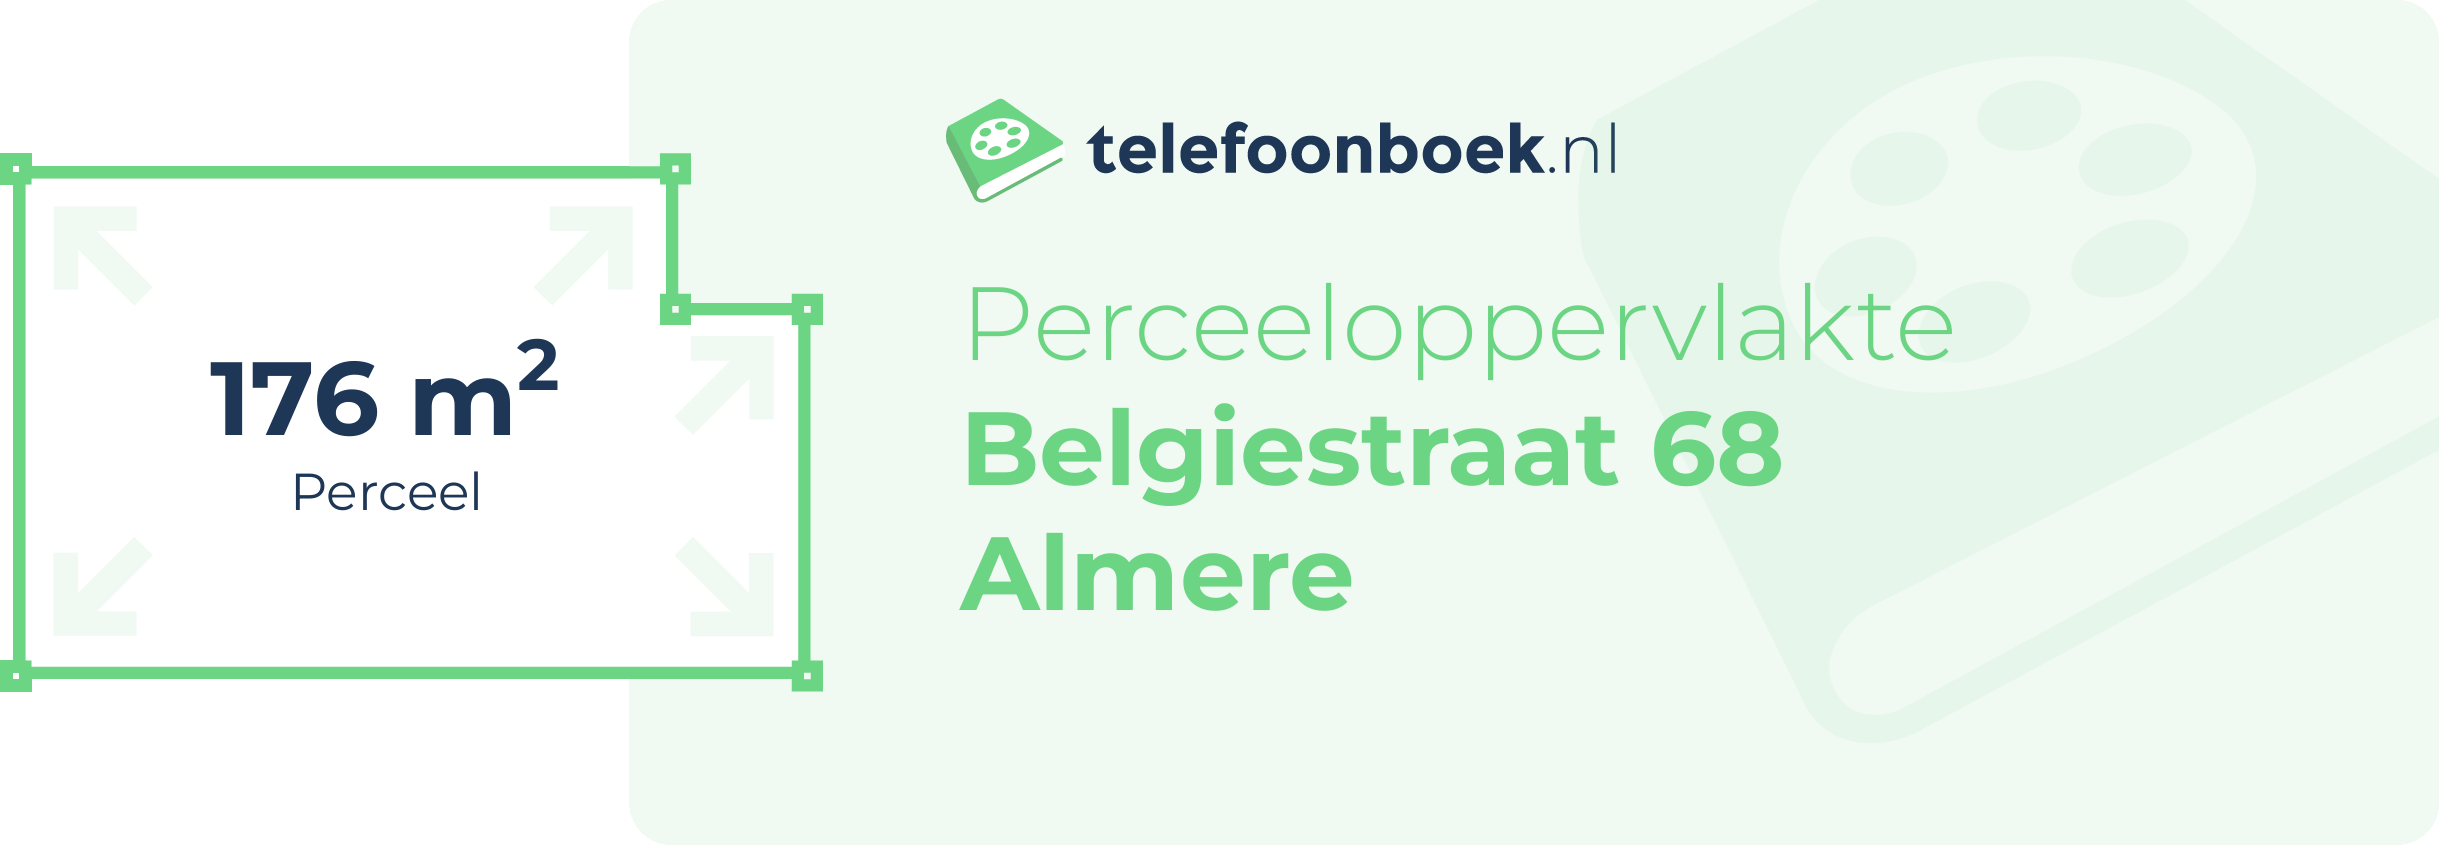 Perceeloppervlakte Belgiestraat 68 Almere